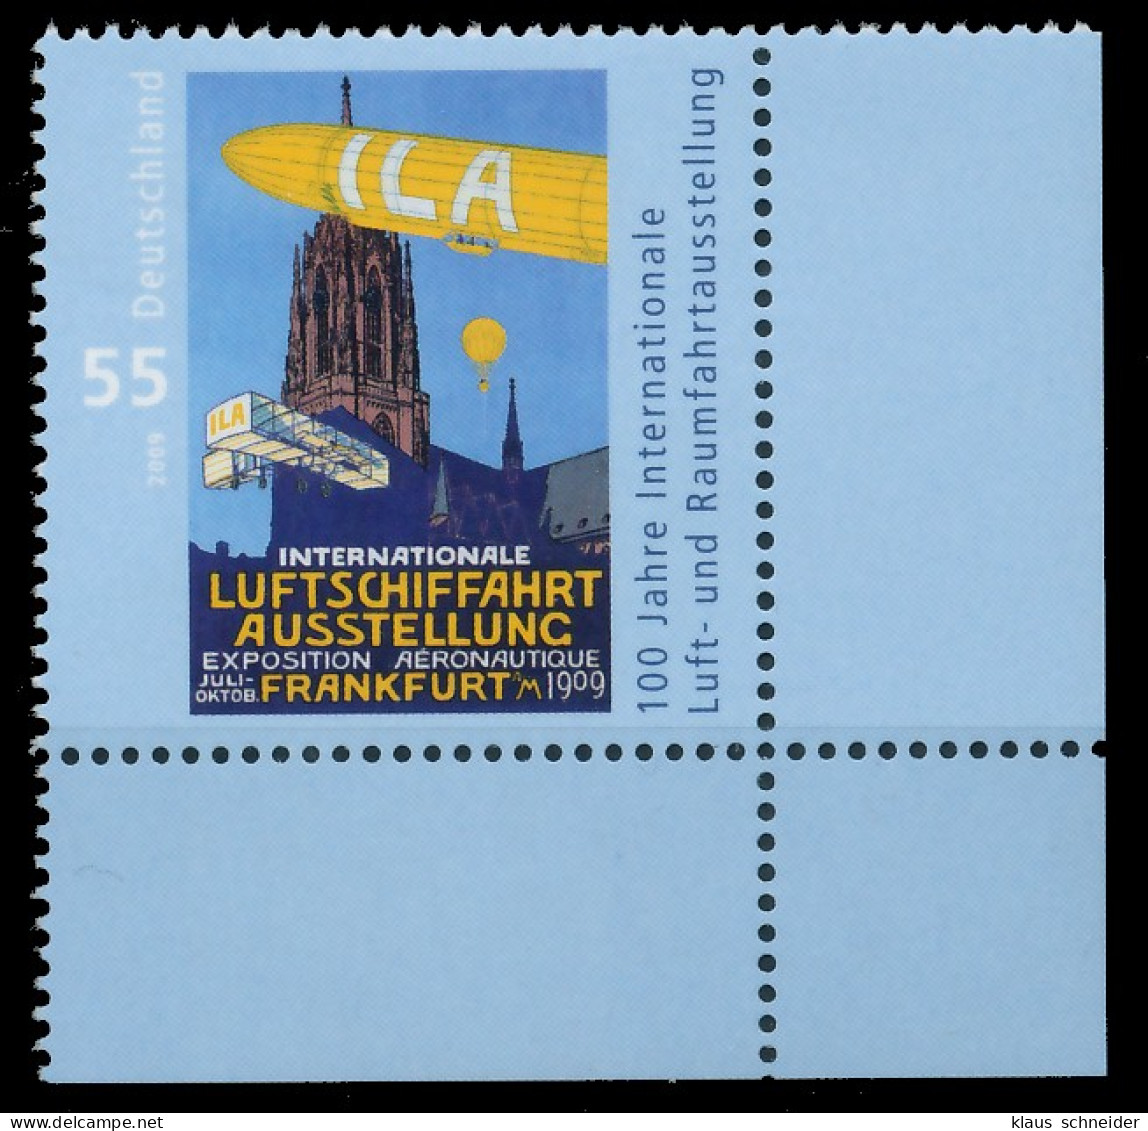 BRD BUND 2009 Nr 2740 Postfrisch ECKE-URE X360B0A - Unused Stamps